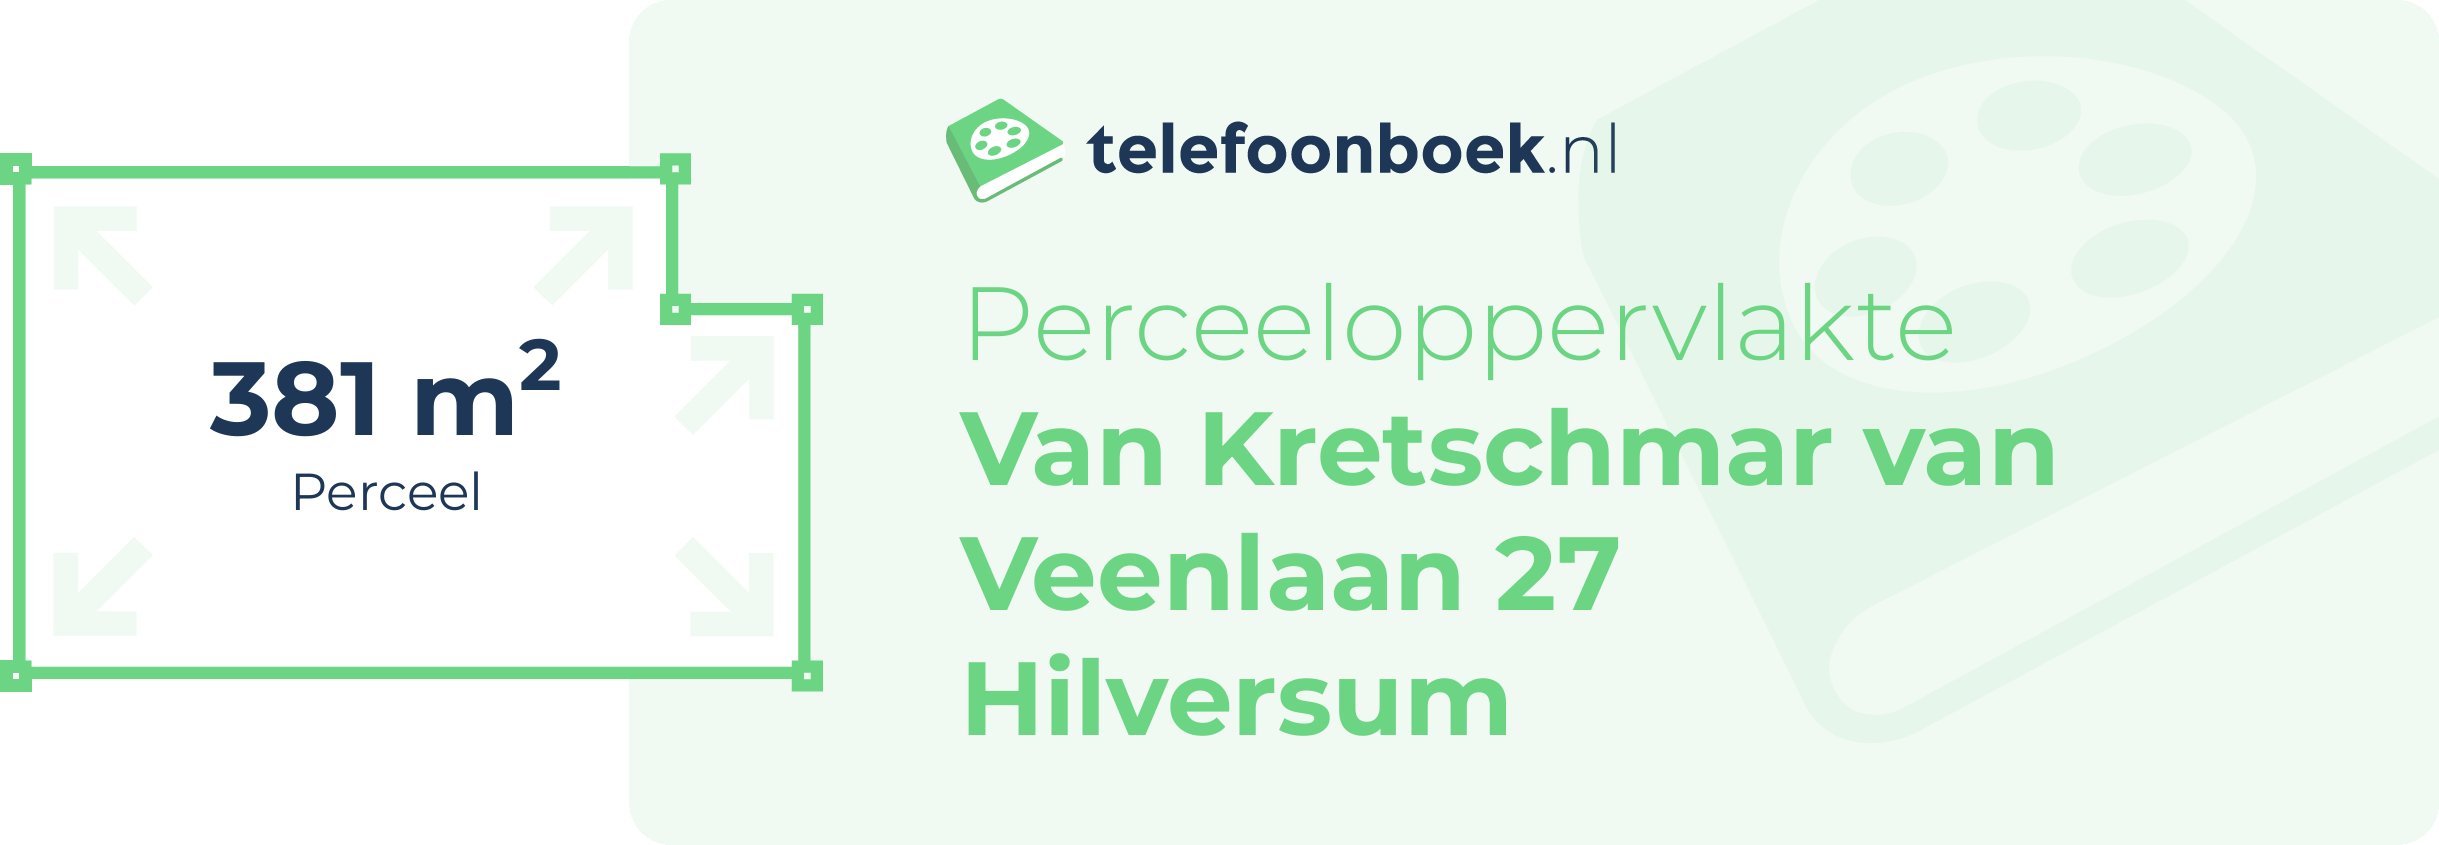 Perceeloppervlakte Van Kretschmar Van Veenlaan 27 Hilversum